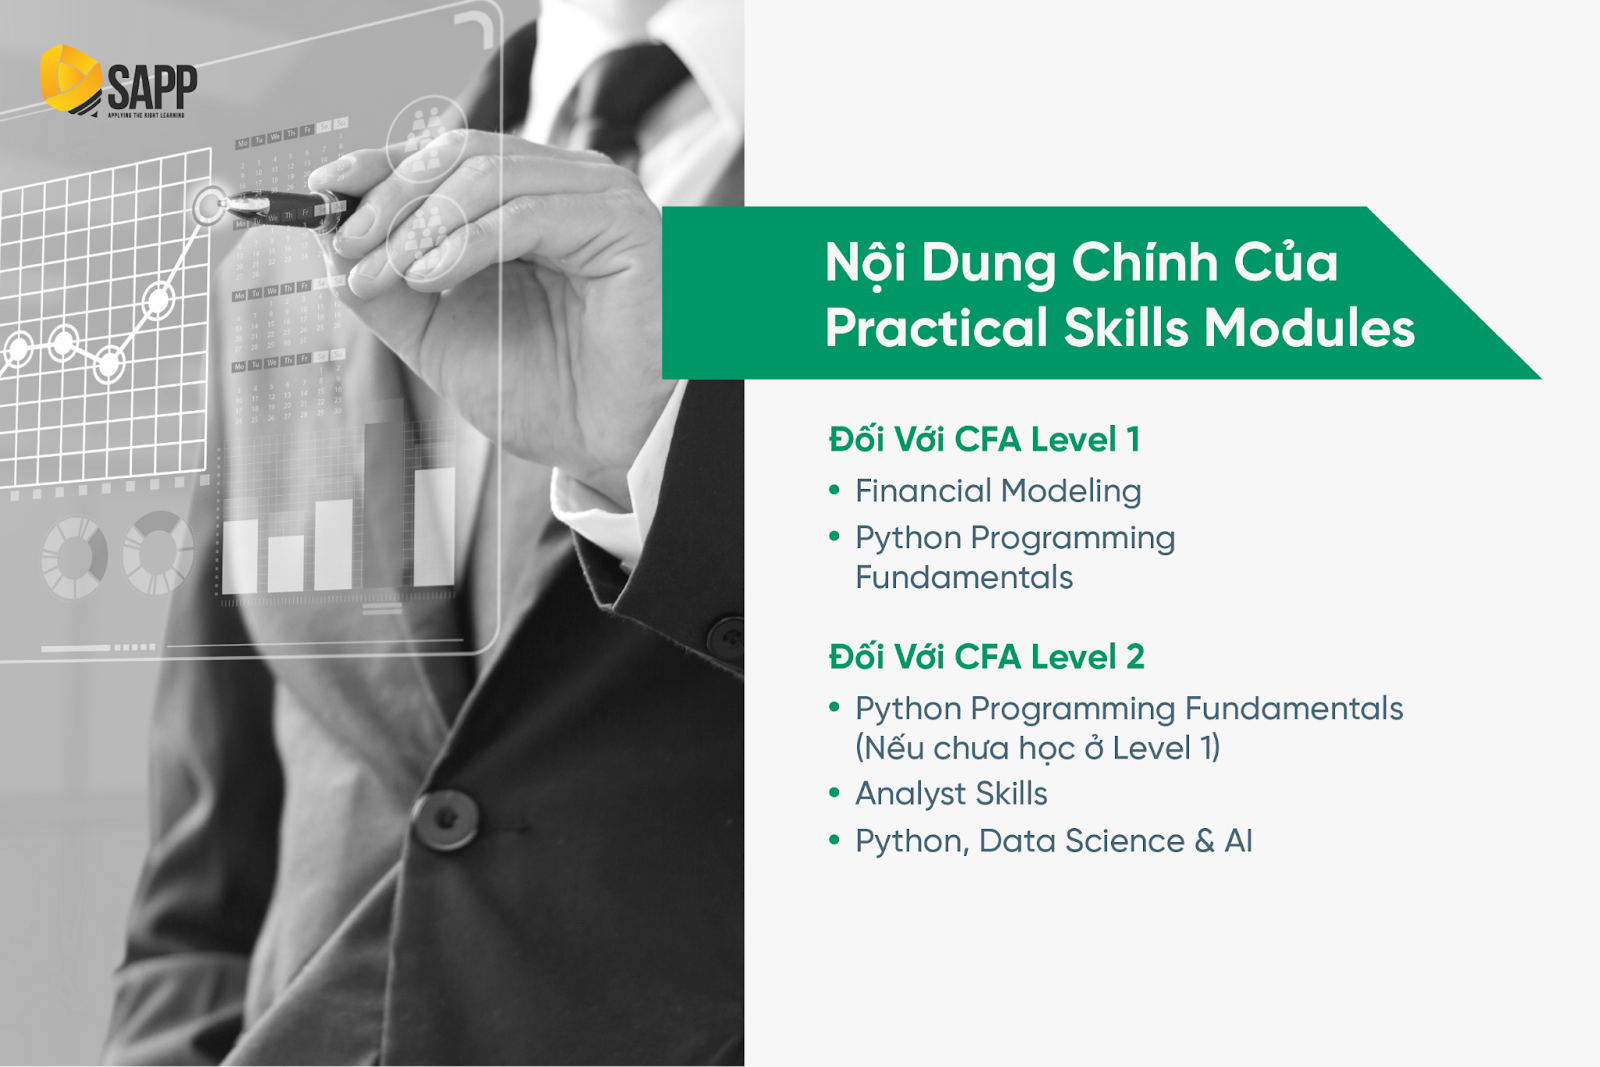 2. Nội dung chính của Practical Skills Modules